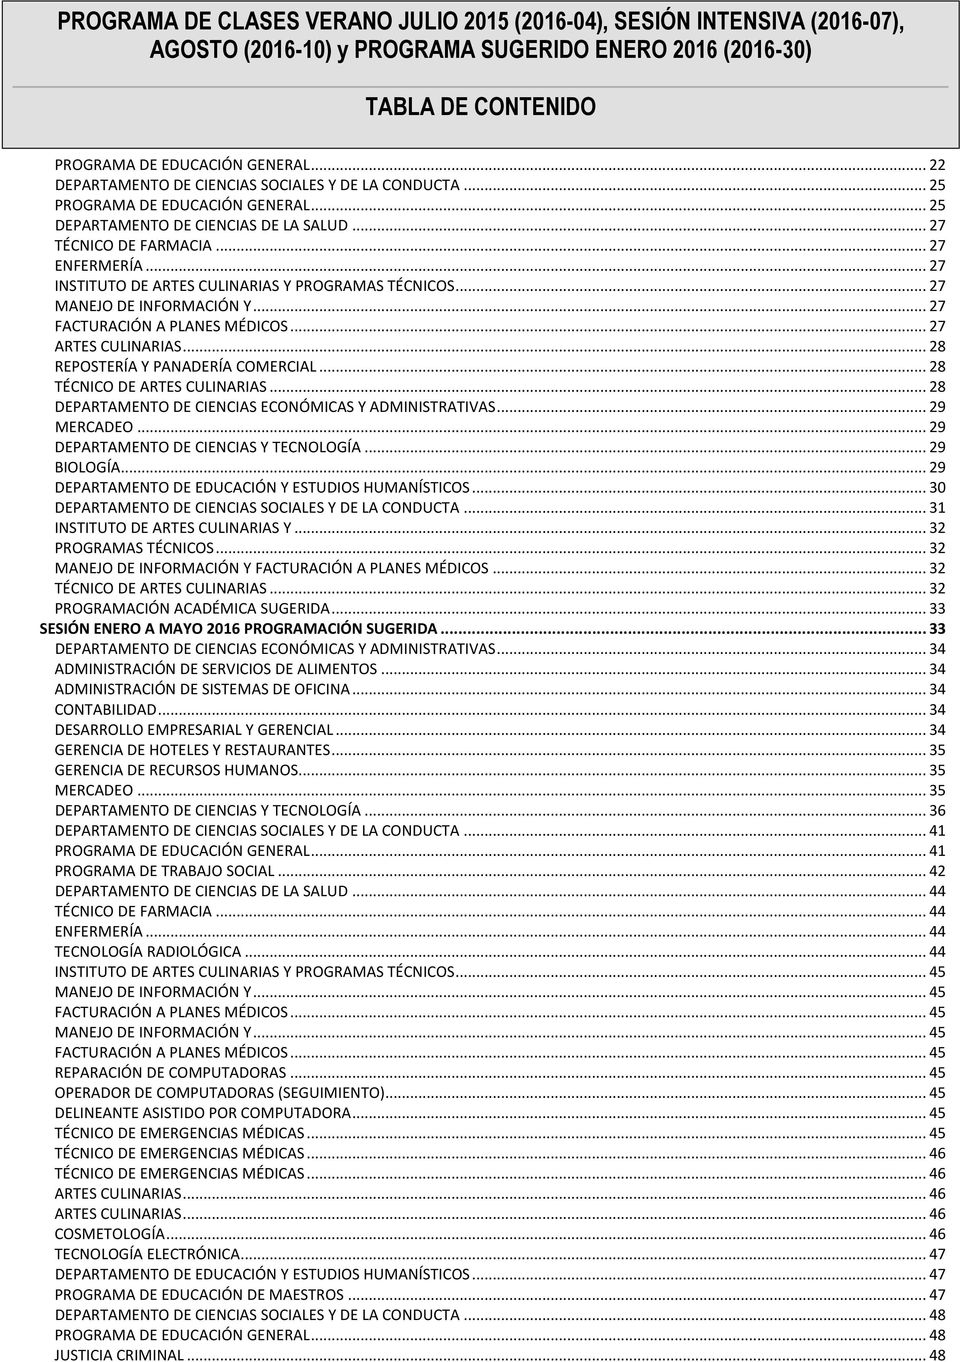 .. 27 INSTITUTO DE ARTES CULINARIAS Y PROGRAMAS TÉCNICOS... 27 MANEJO DE INFORMACIÓN Y... 27 FACTURACIÓN A PLANES MÉDICOS... 27 ARTES CULINARIAS... 28 REPOSTERÍA Y PANADERÍA COMERCIAL.